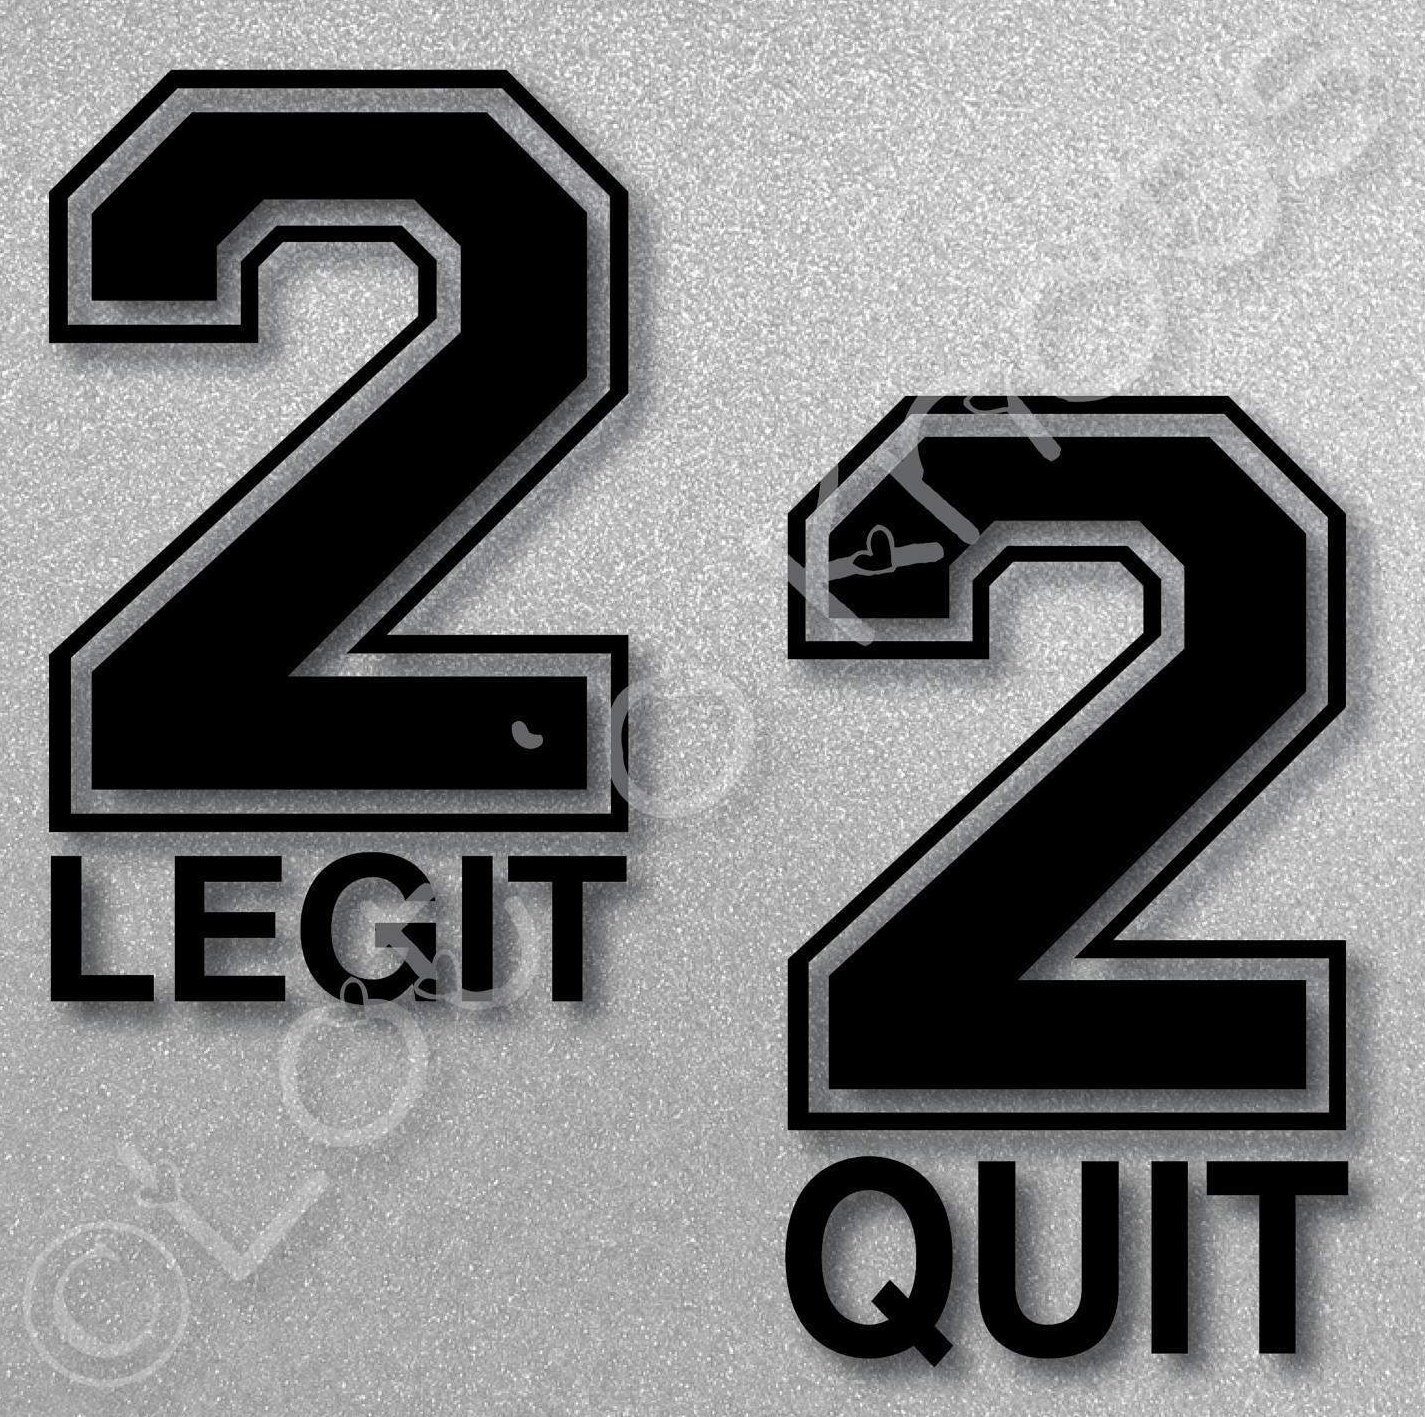 2 legit 2 quit